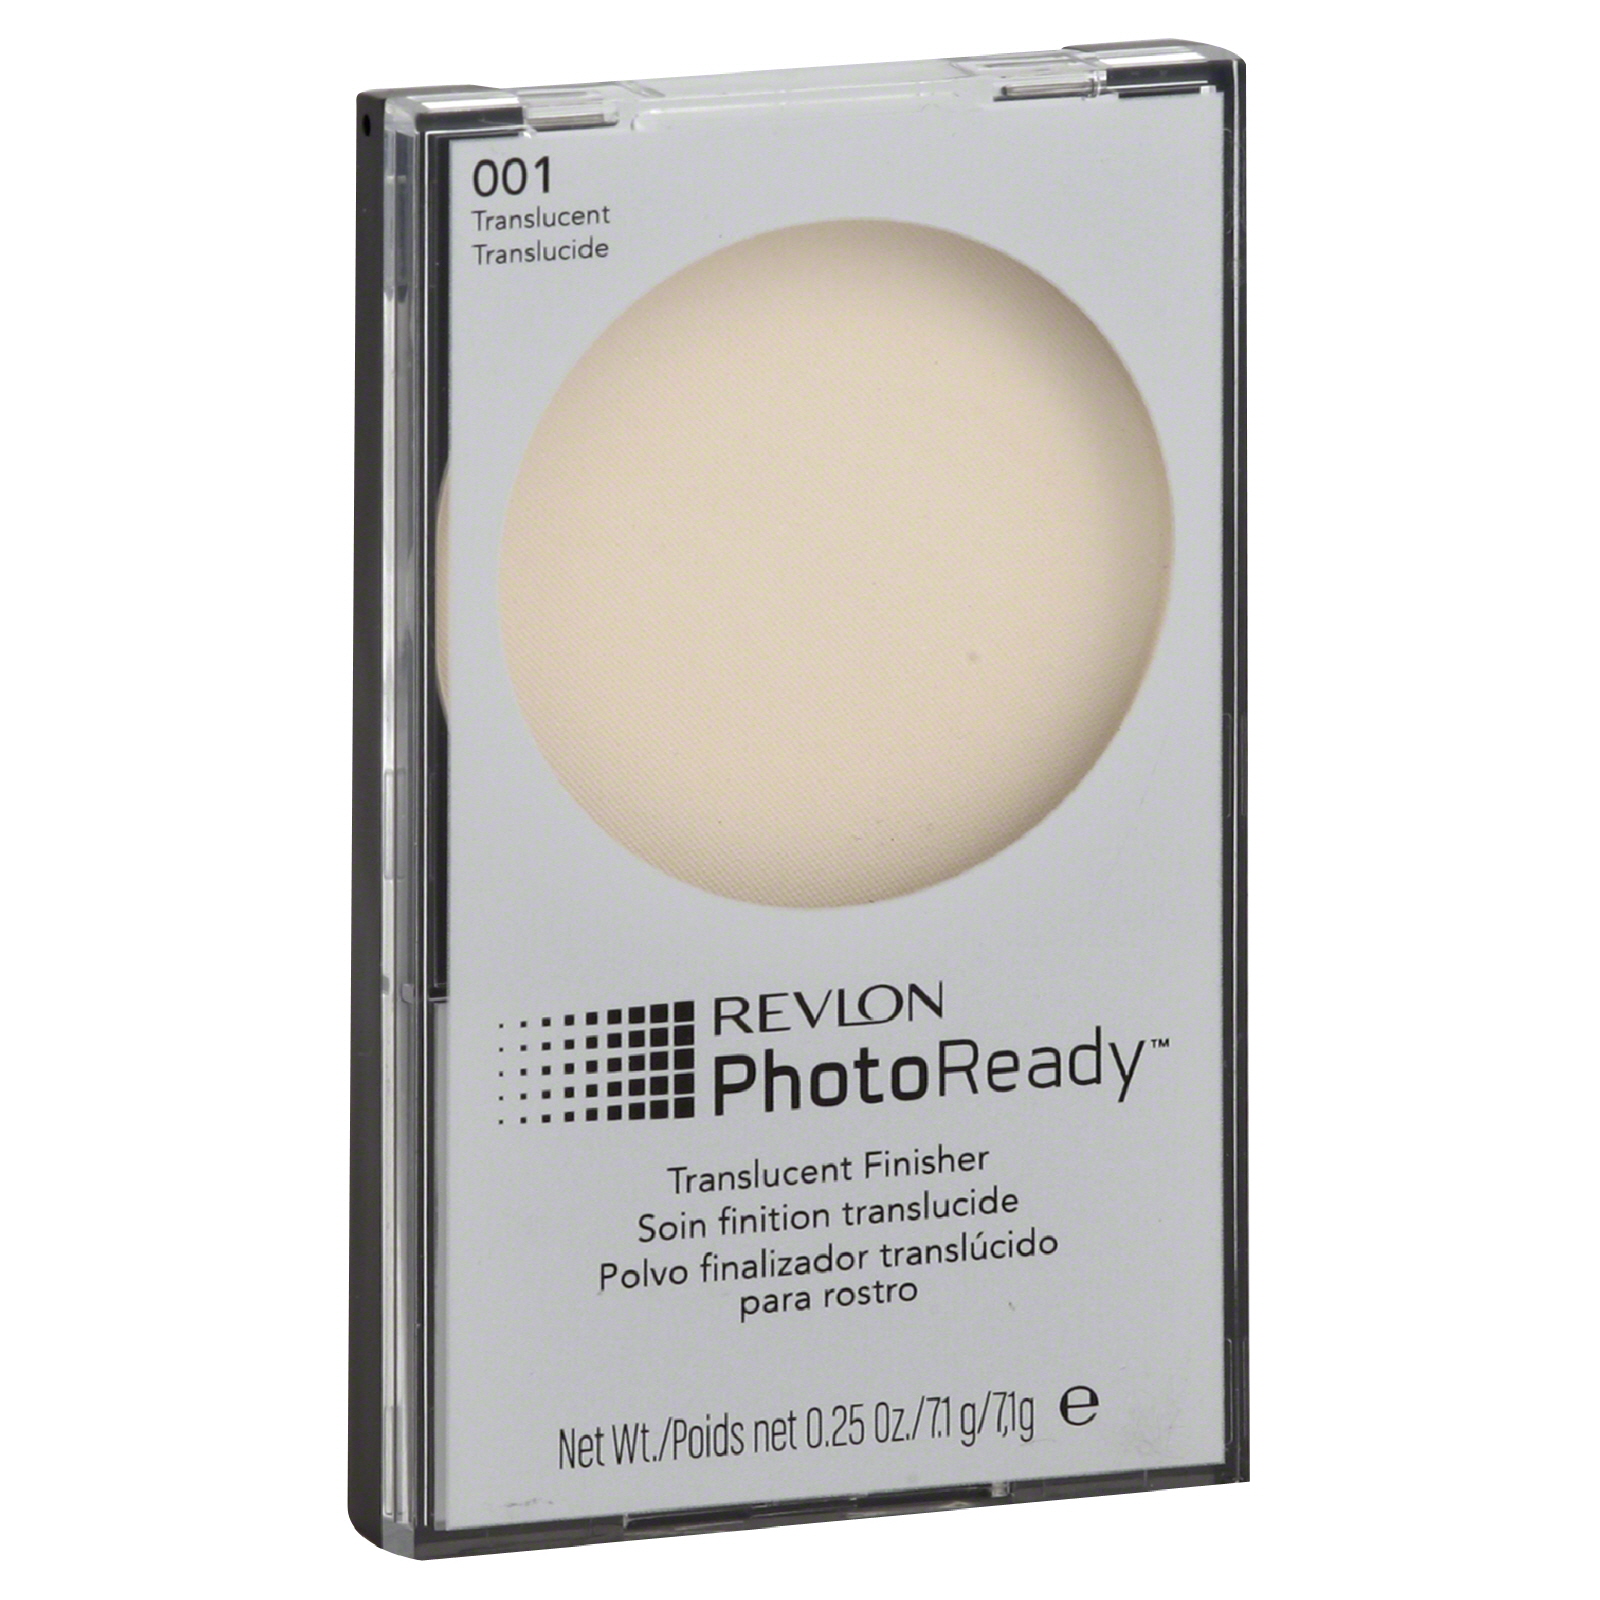 Photoready Translucent Finisher, Translucent 001, 0.25 oz (7.1 g)